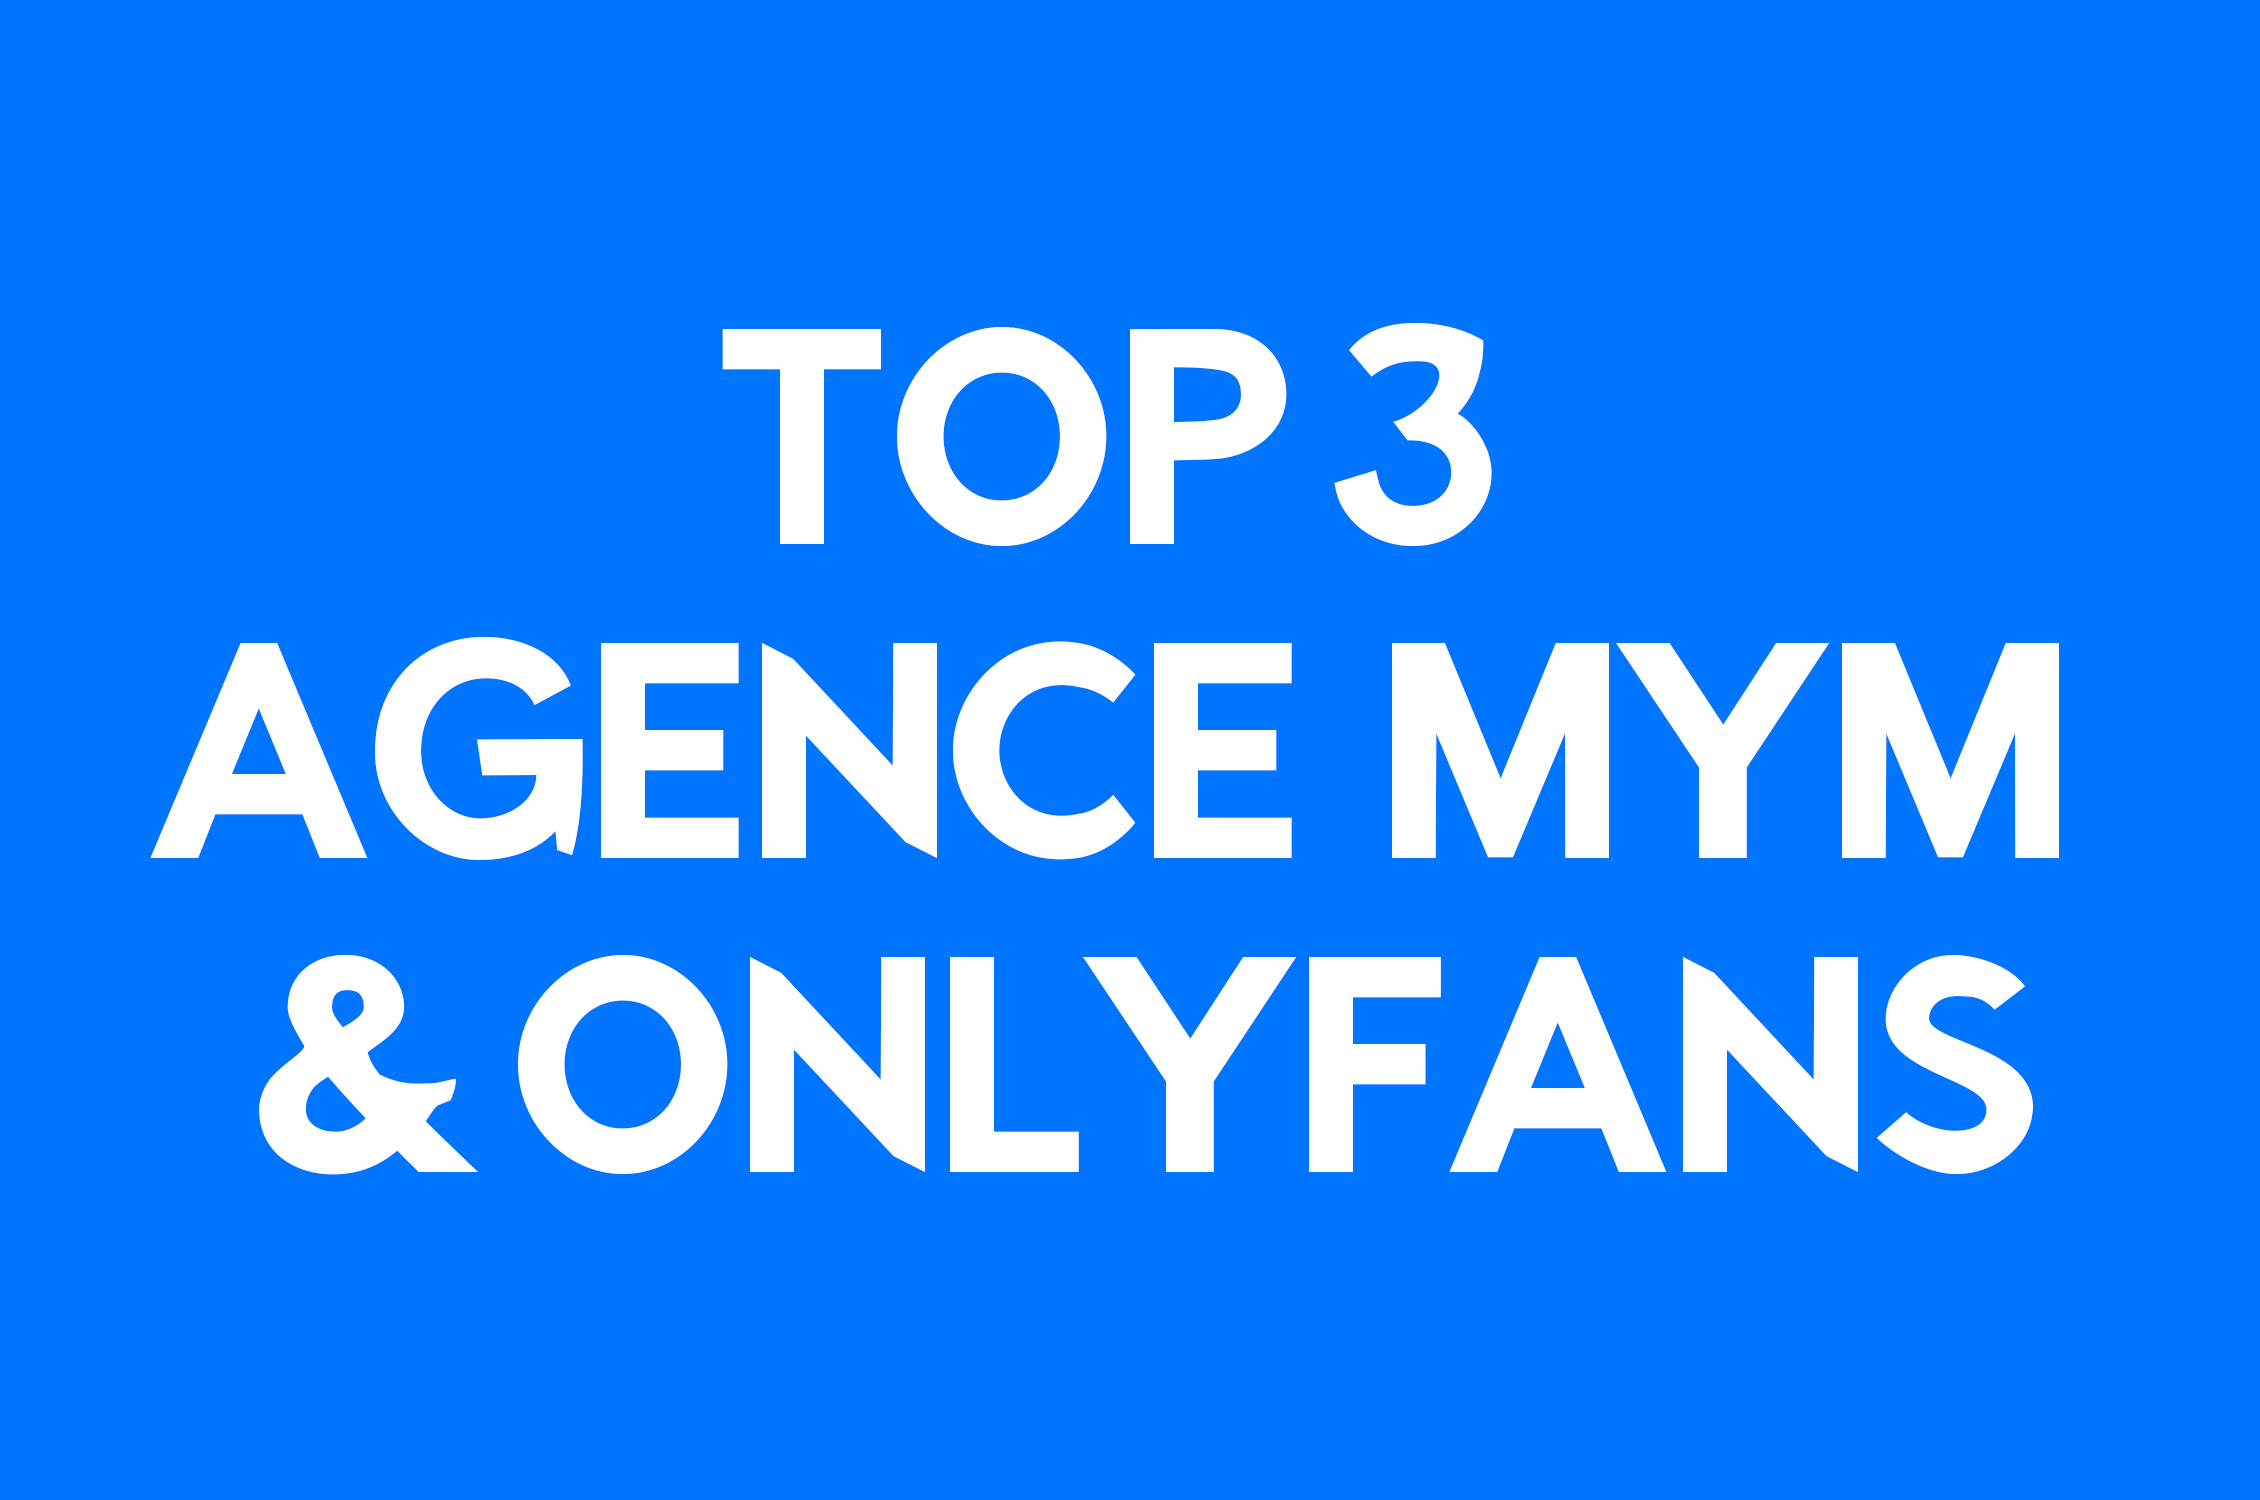 Classifica delle migliori agenzie di modelle Mym e Onlyfans